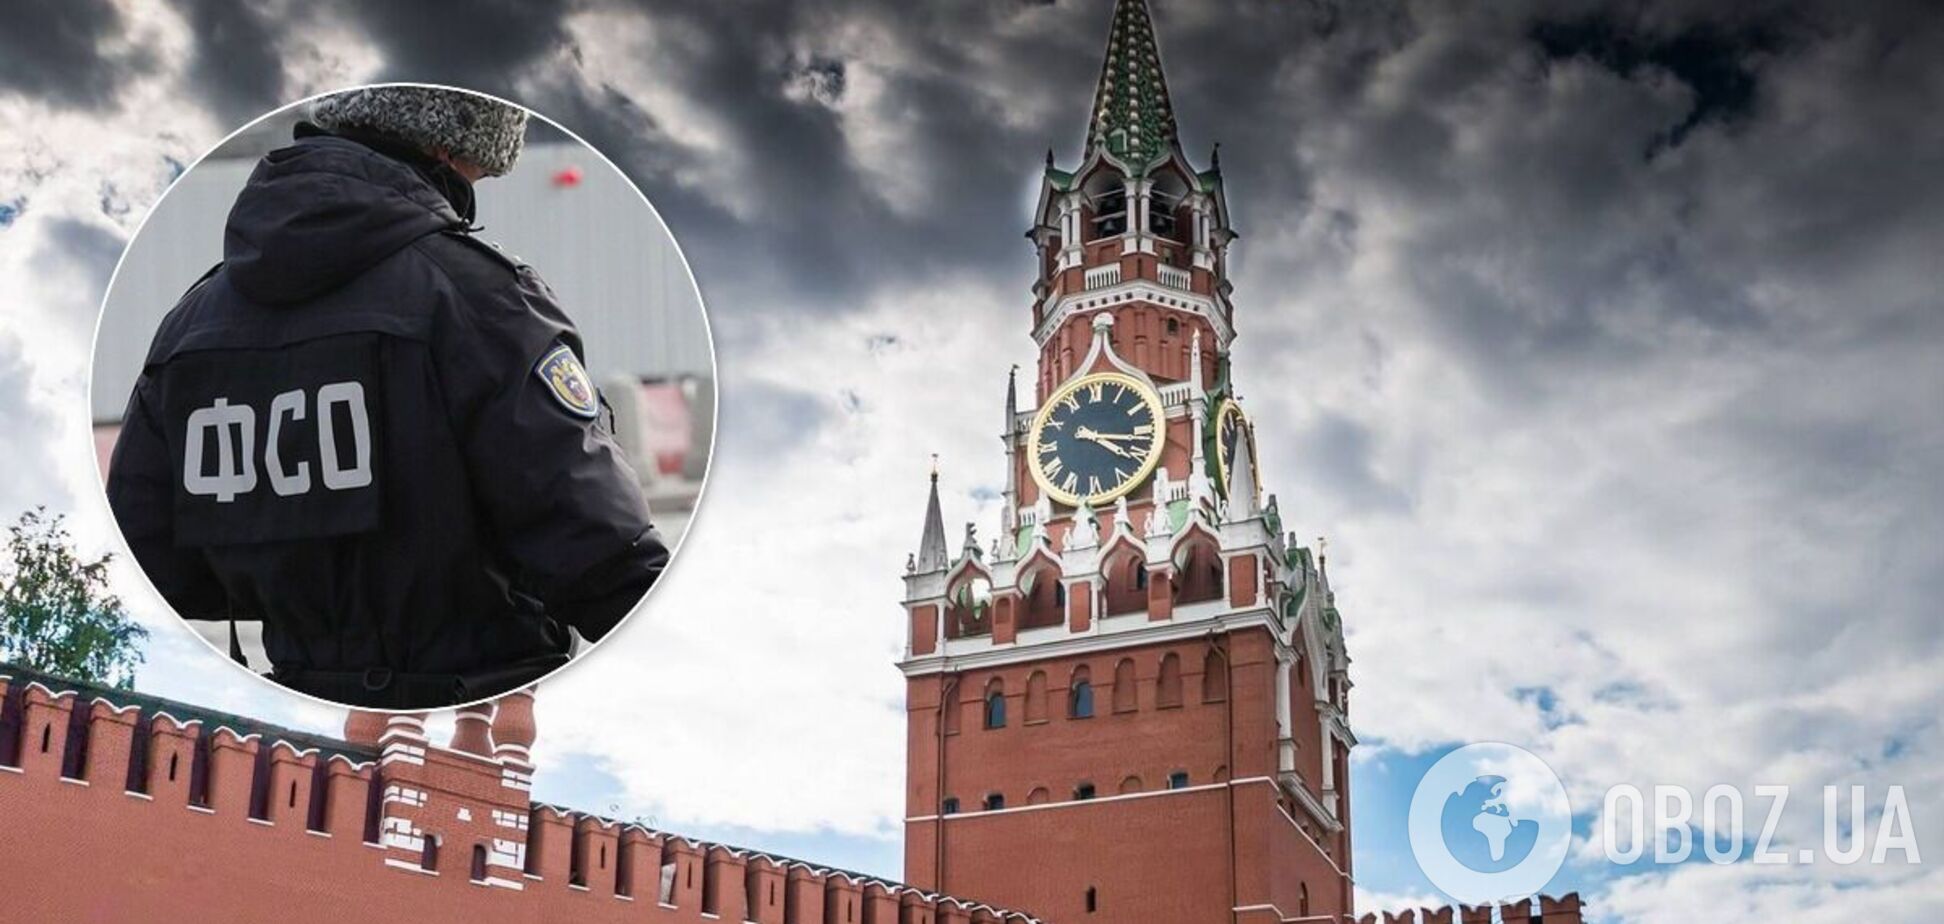 У Кремлі наклав на себе руки співробітник охорони Путіна – ЗМІ